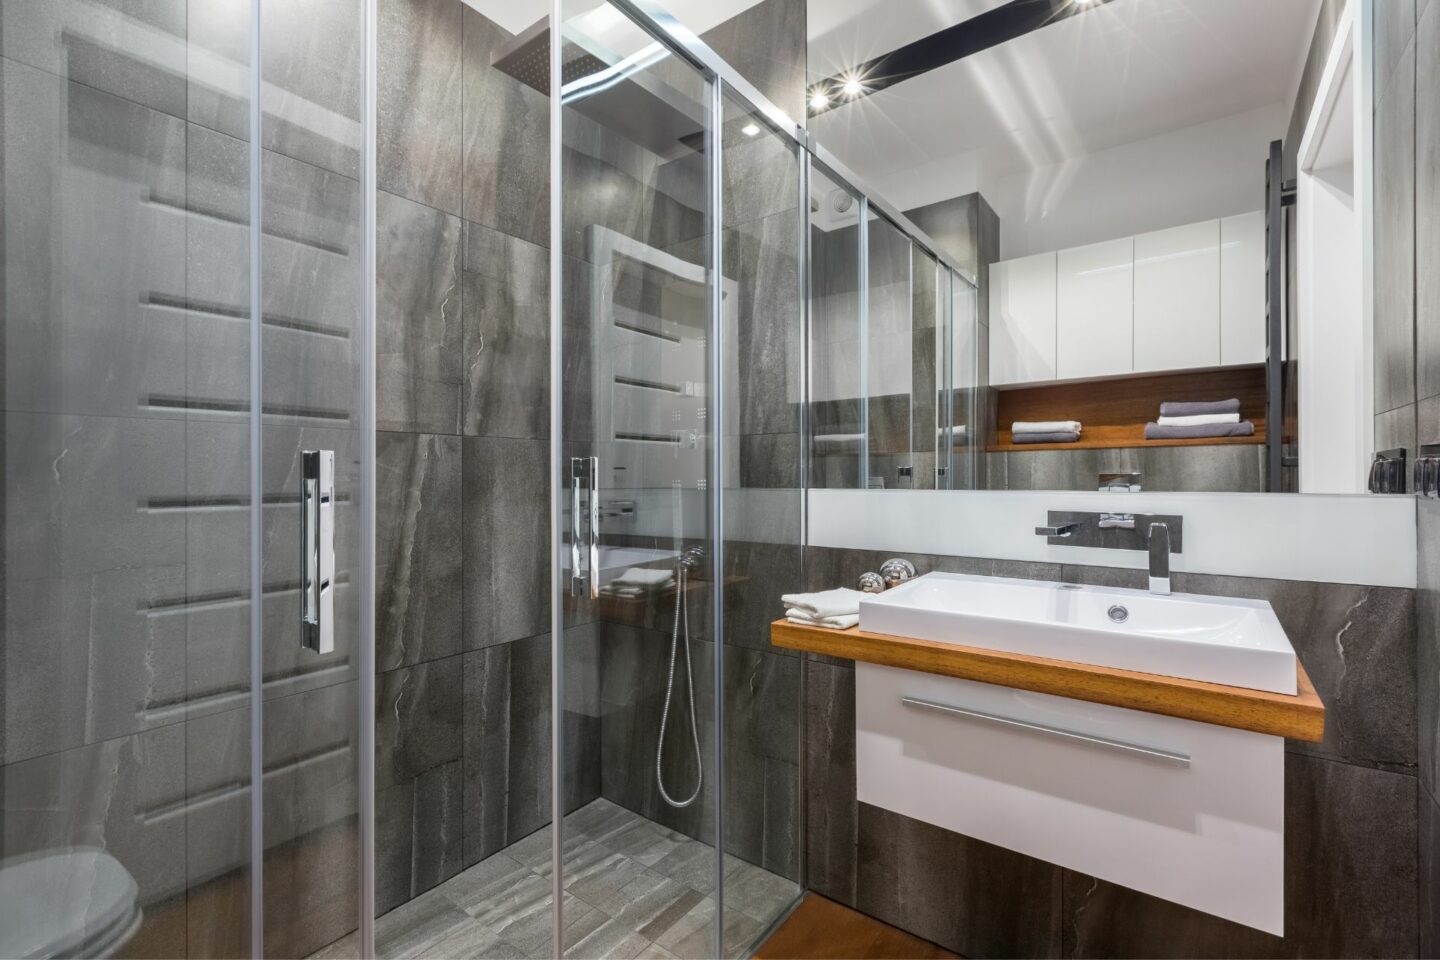 Bathroom Remodeling - Walk-in Shower and Modern Vanity